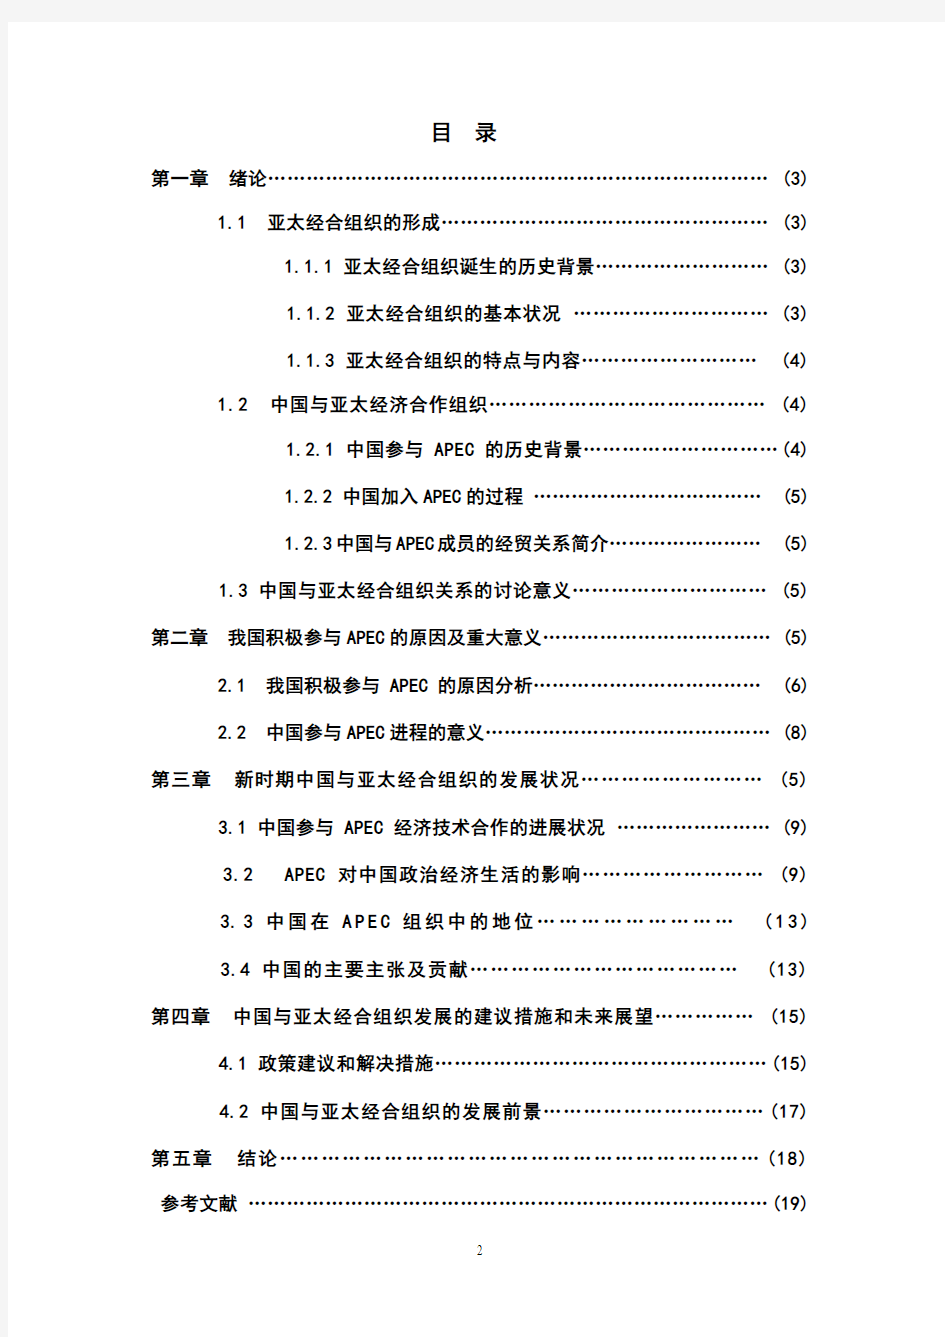 亚太经合组织与中国的关系_应用文写作考试论文 - 副本